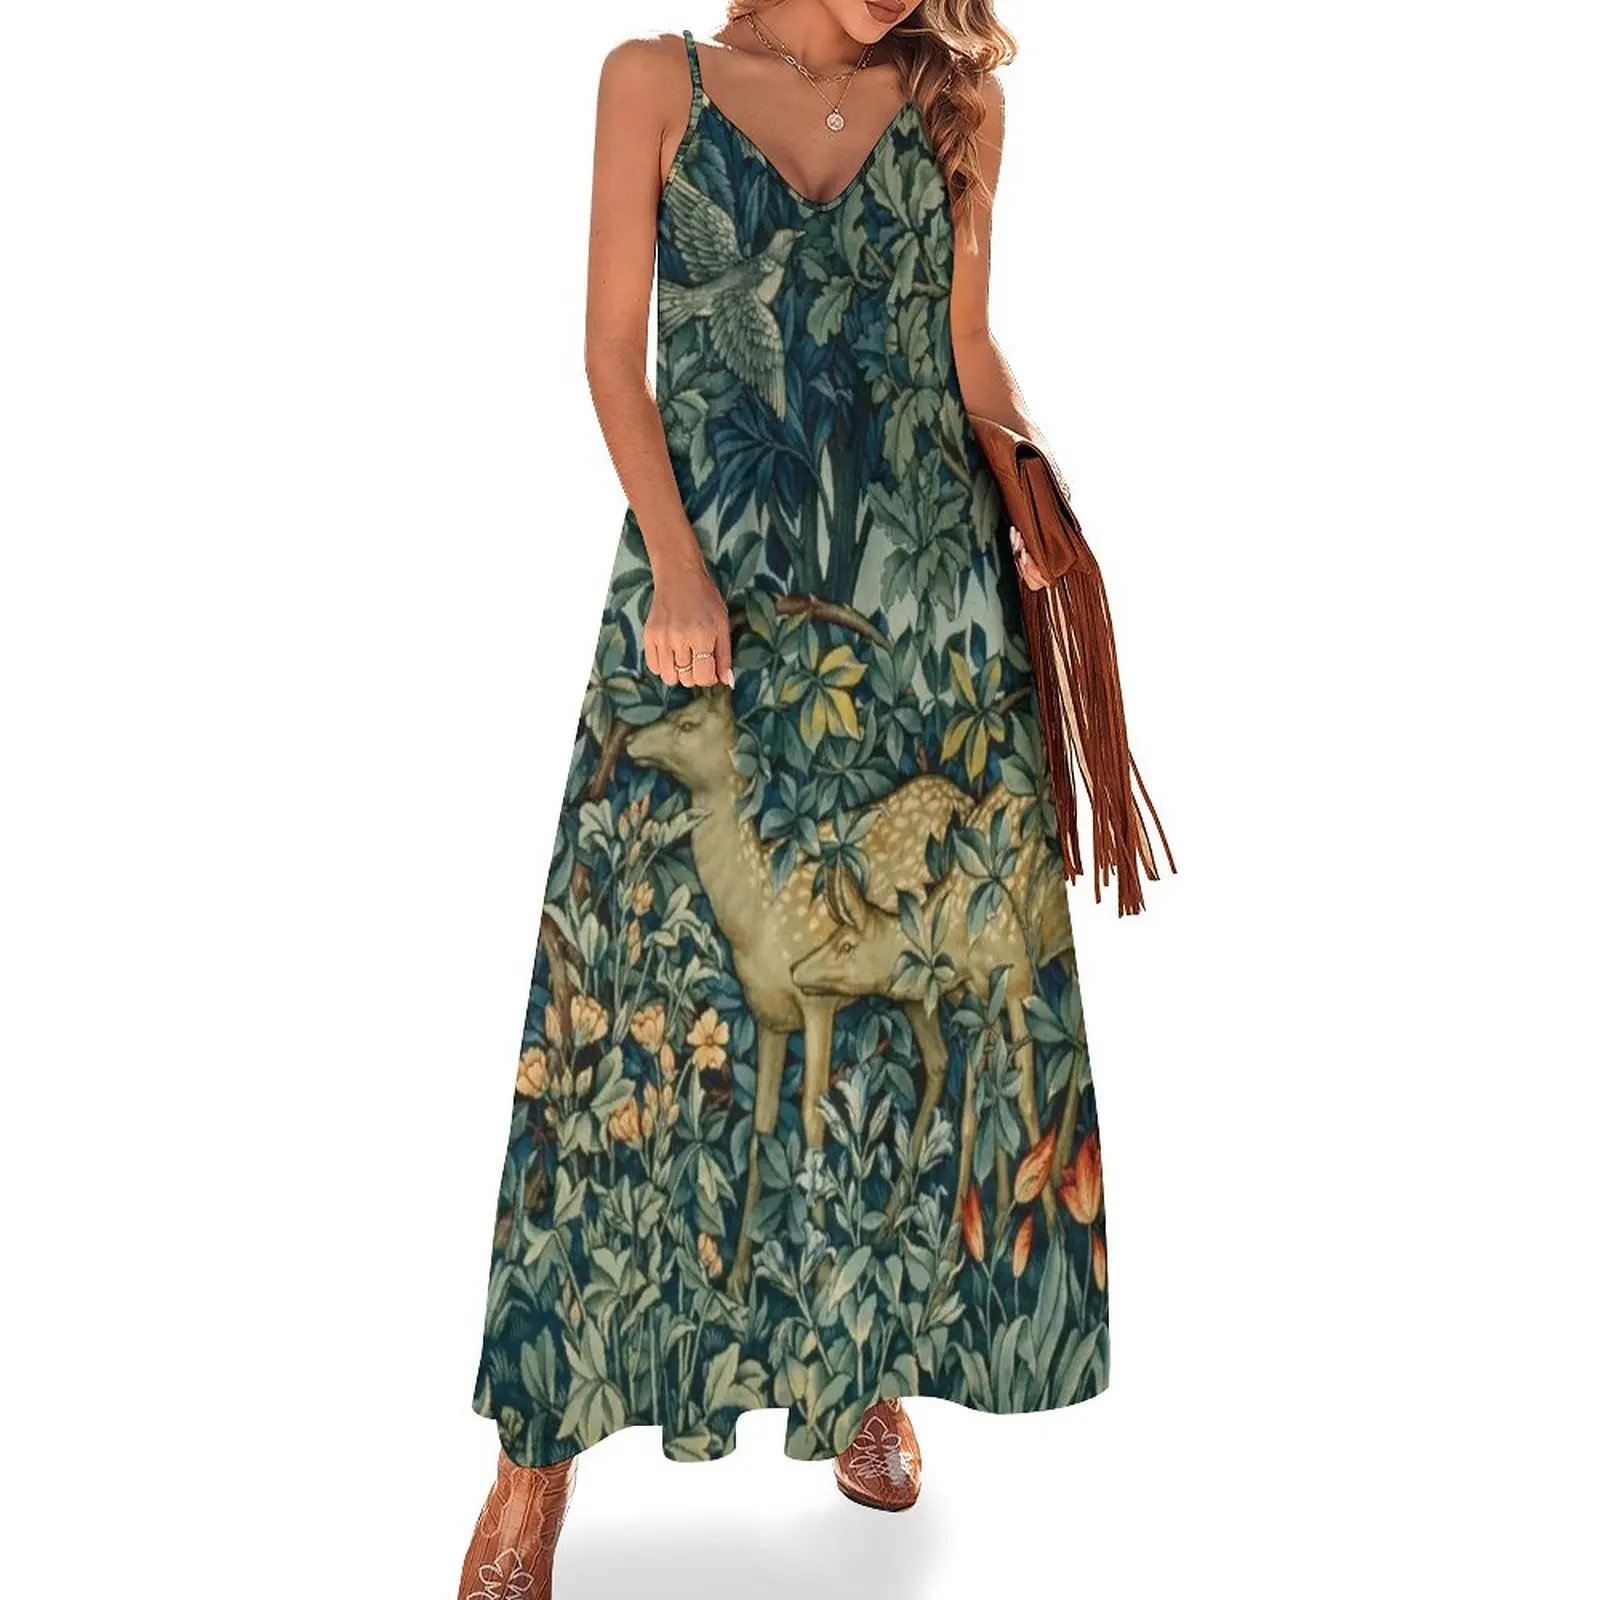 

Зеленое платье без рукавов с цветочным рисунком двойного делания и птиц в лесу